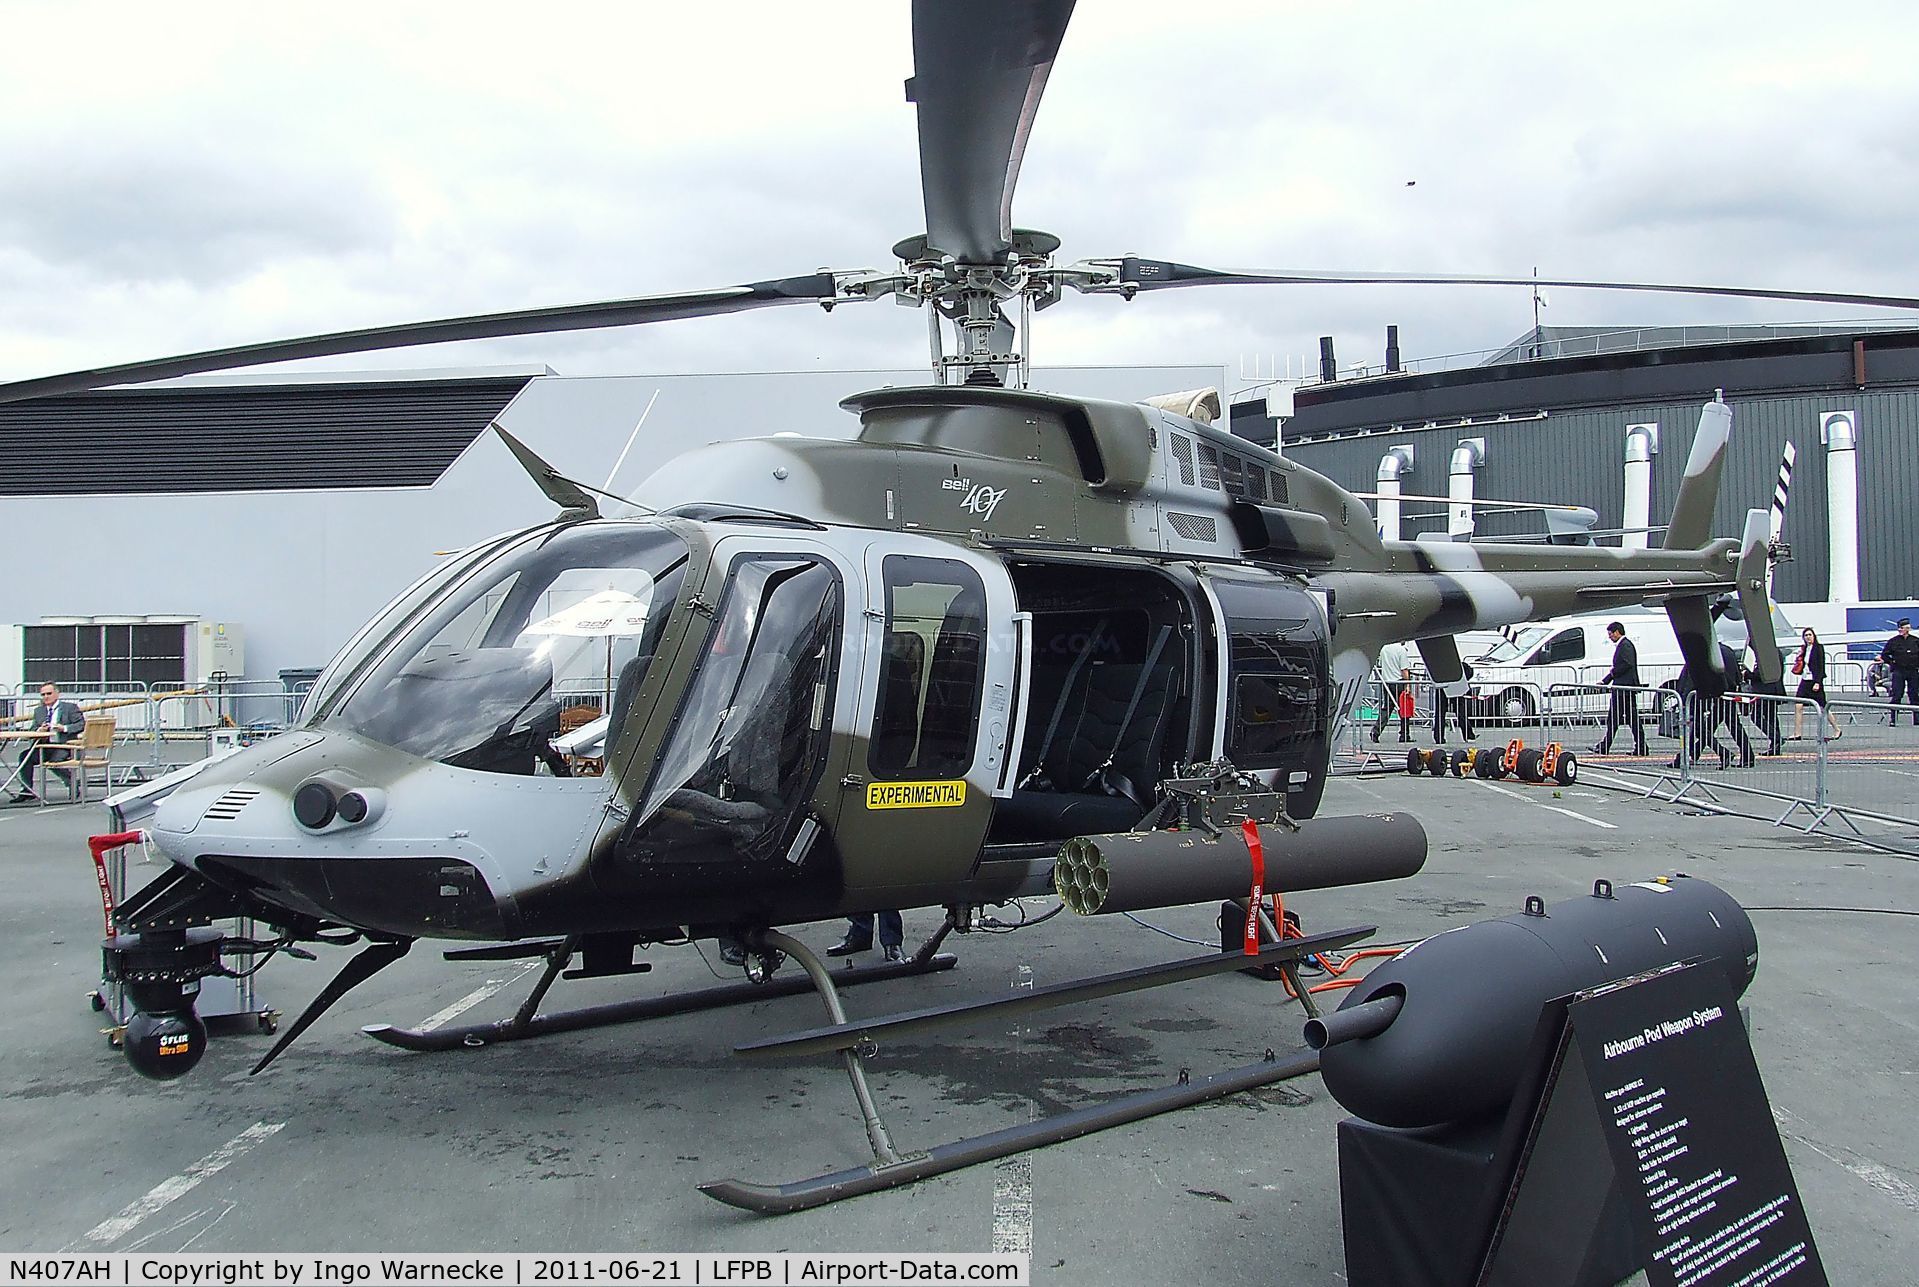 Aircraft N407AH (2010 Bell 407 C N 53989) Photo By Ingo Warnecke (Photo ID: AC633477)